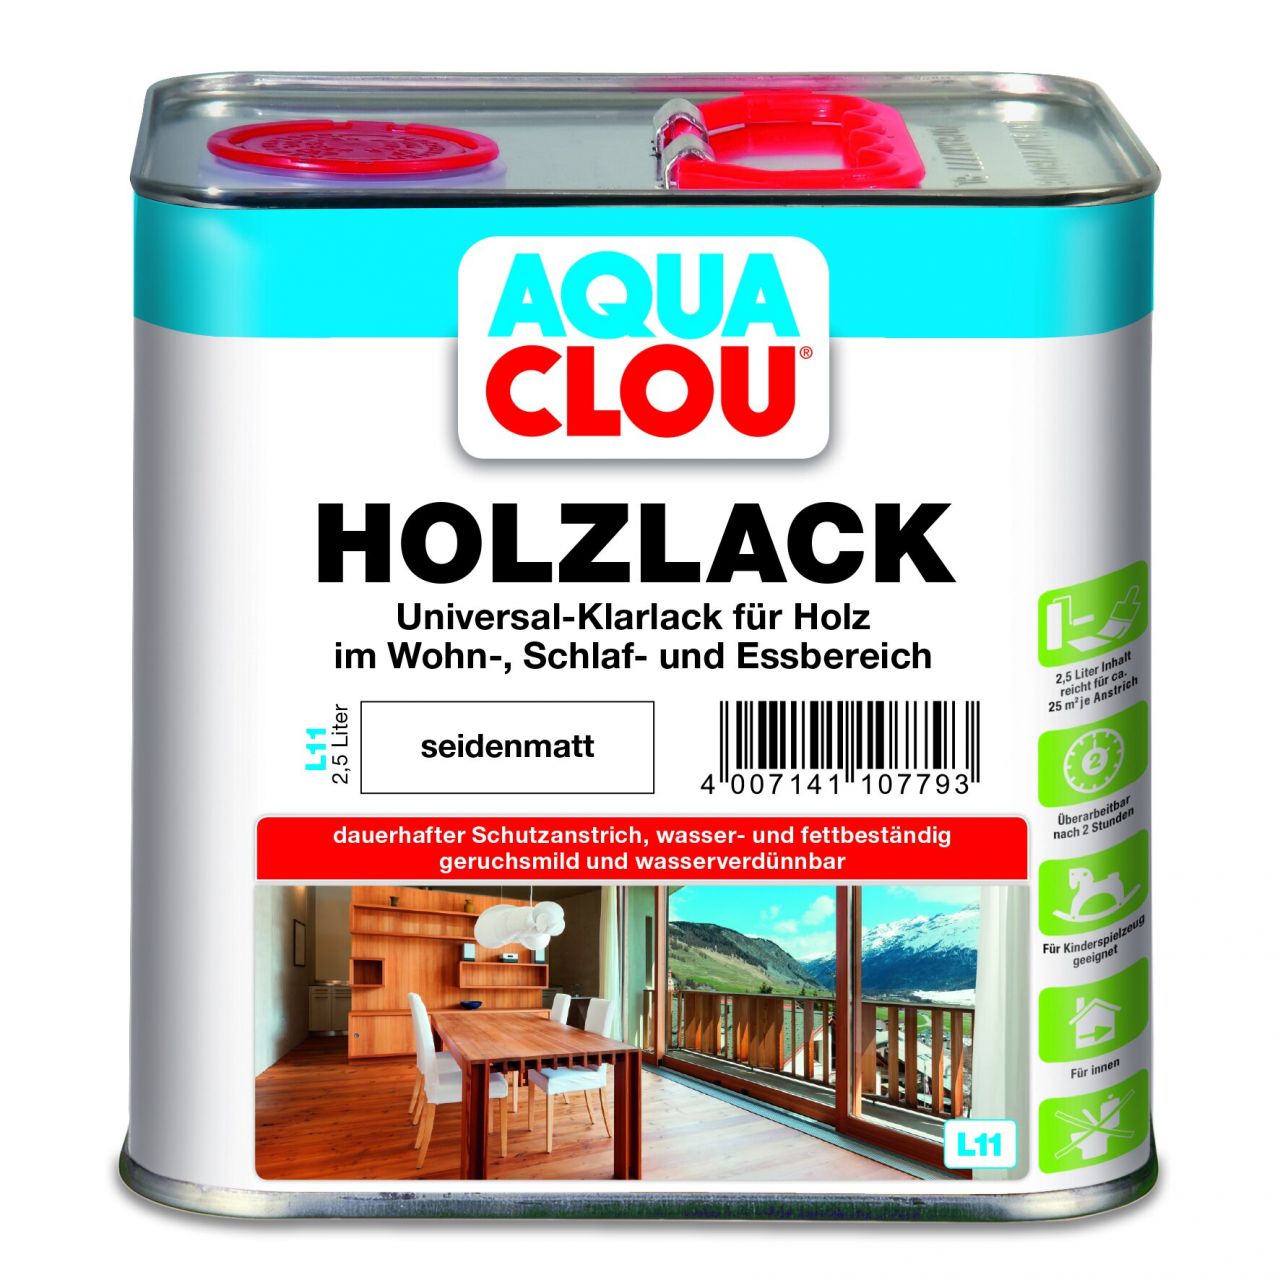 Aqua Clou Holzlack L11 2,5 L seidenmatt von Aqua Clou